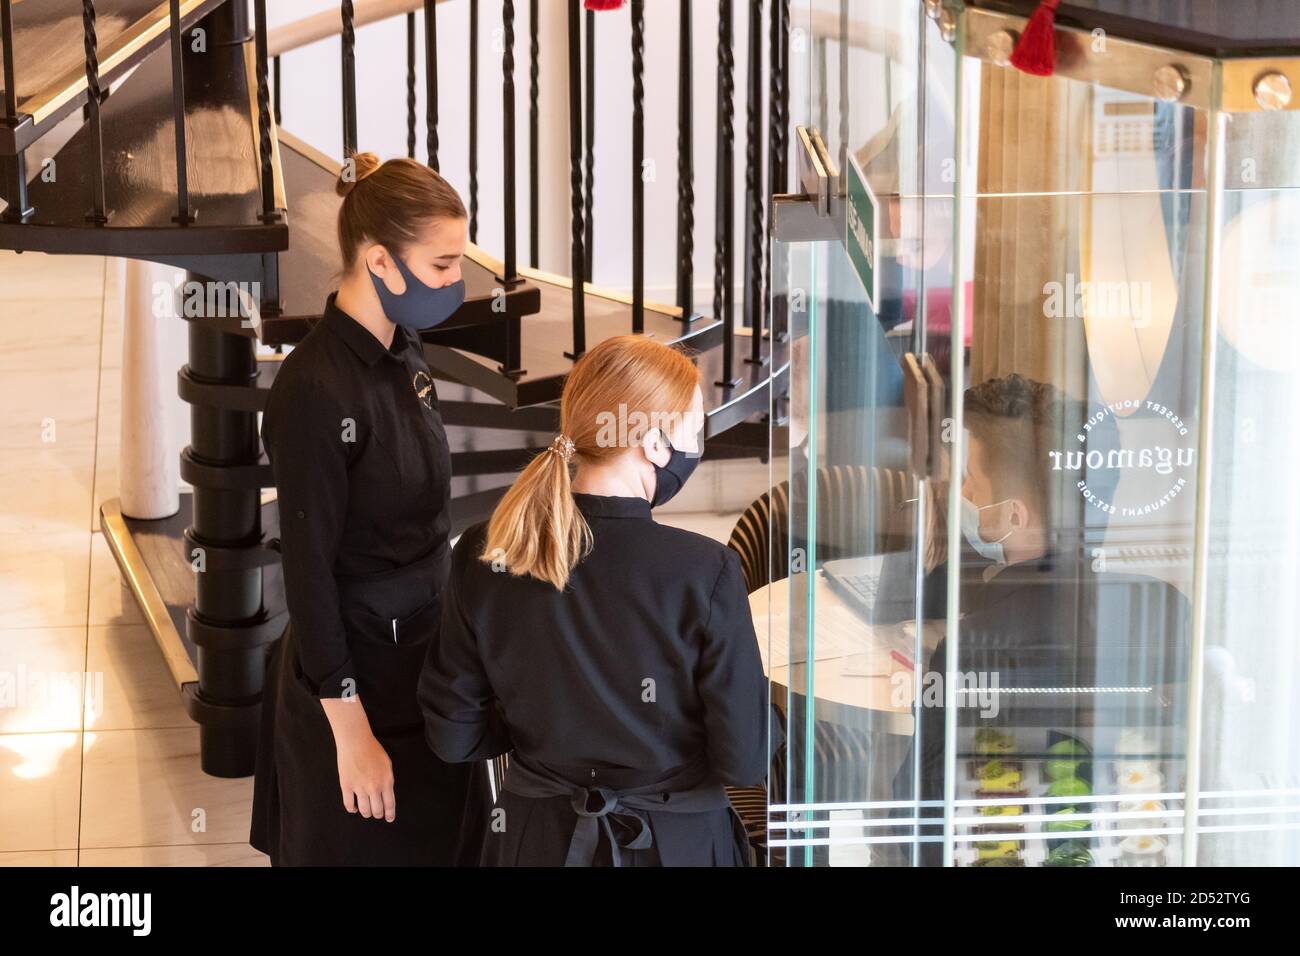 Kellnerinnen mit Masken kontrollieren oder überprüfen die Gäste an der Bar, Café oder Restaurant Eingang in der Nähe der Tür Stockfoto